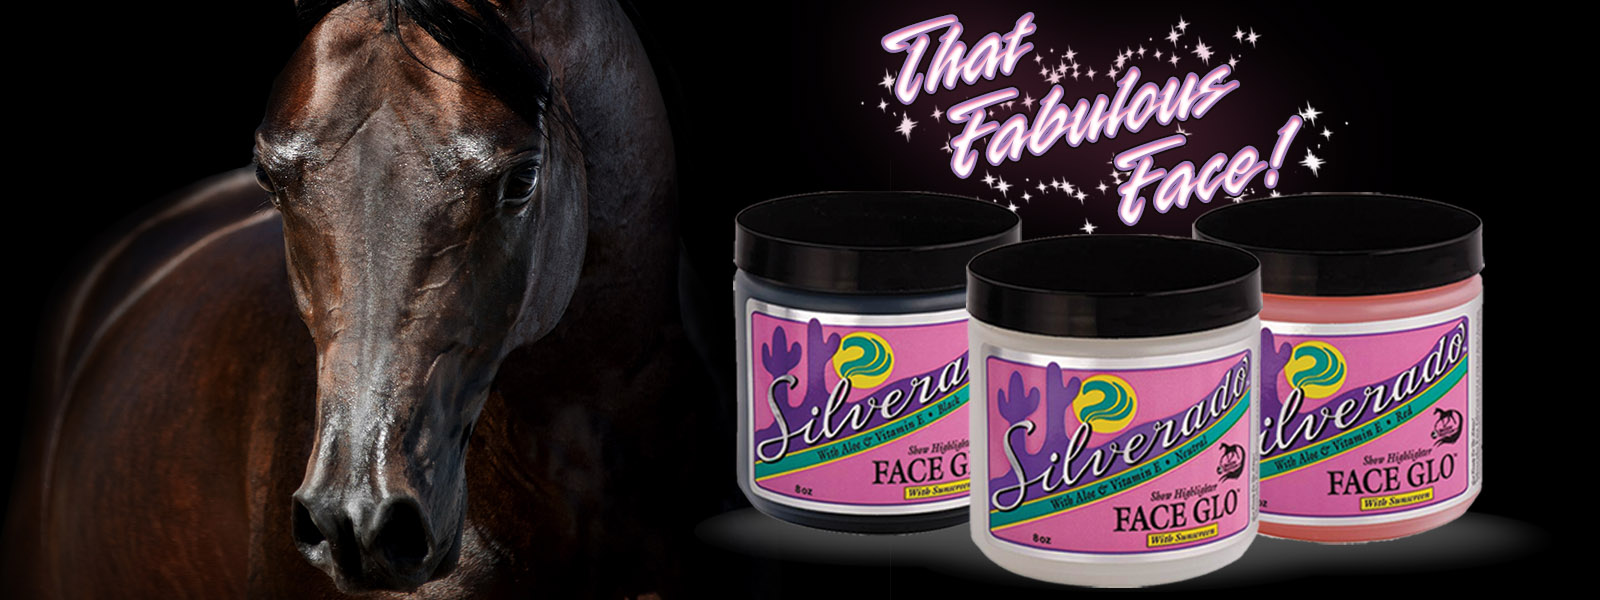 Face Glo by Silverado Horse Face Cream